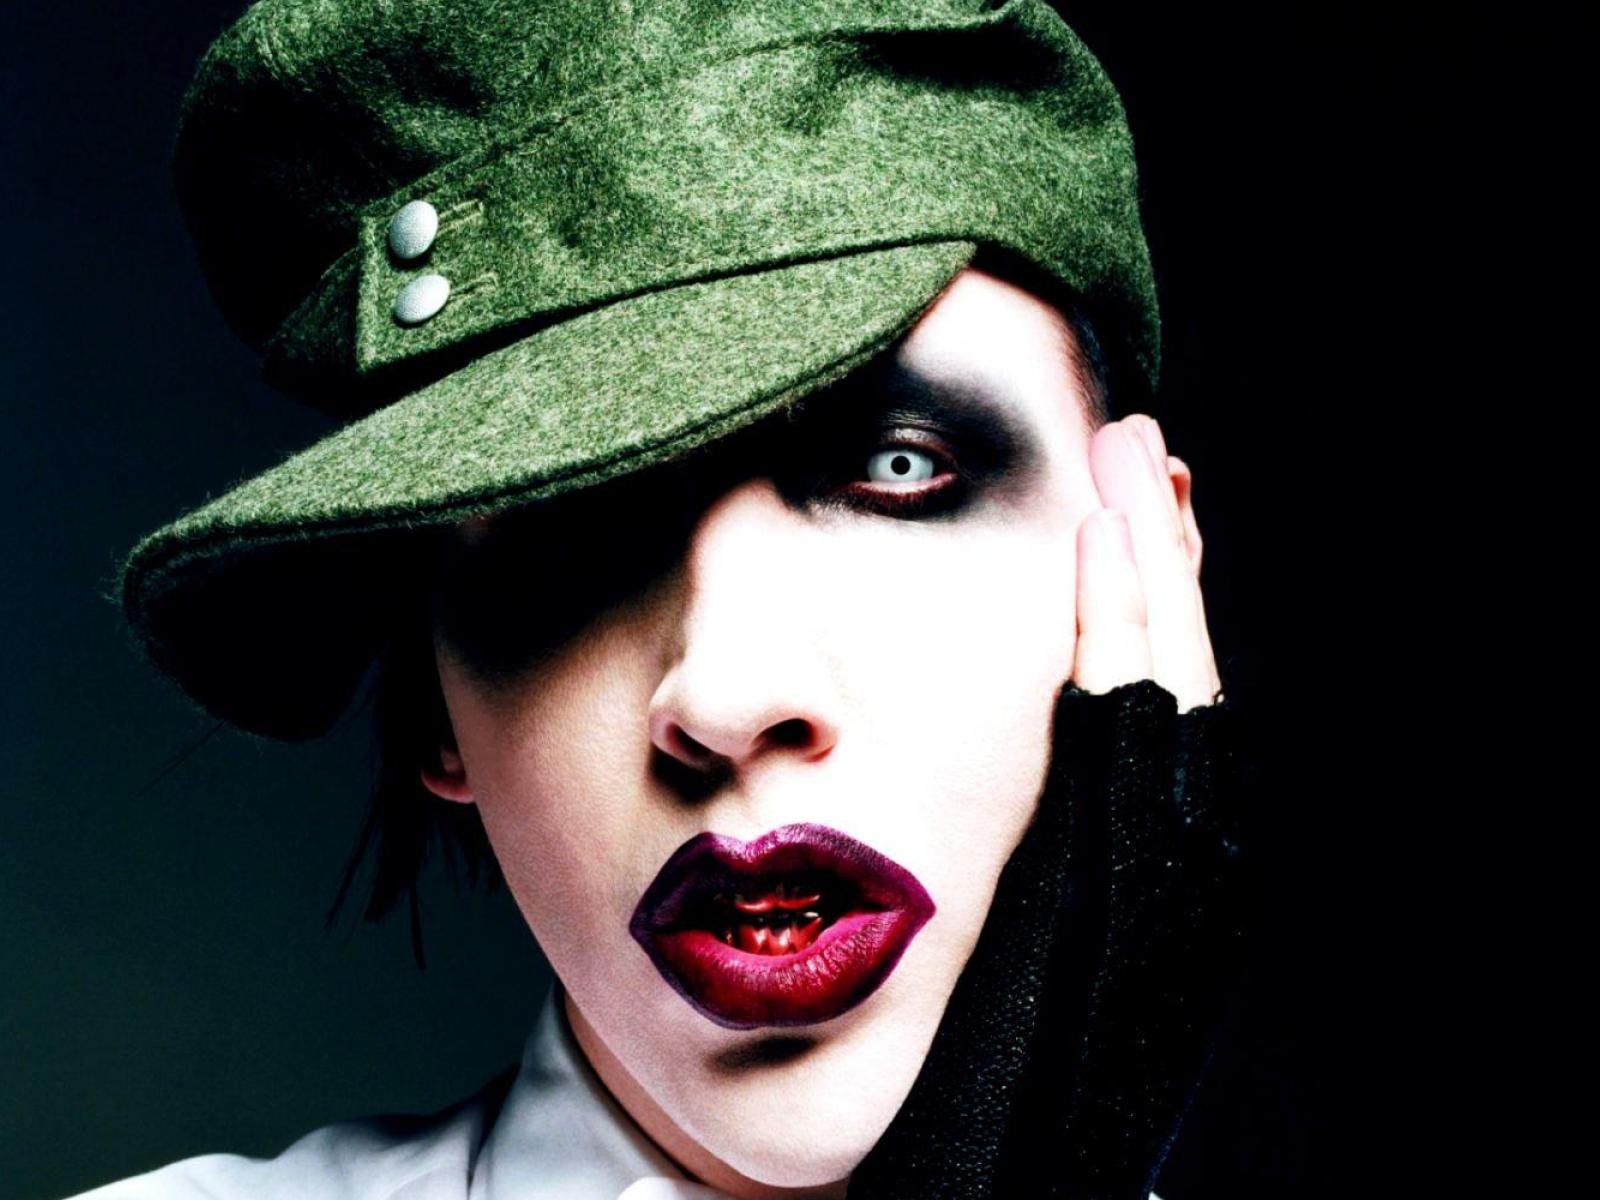 Heavy Metal Industrial Metal Marilyn Manson 1600x1200